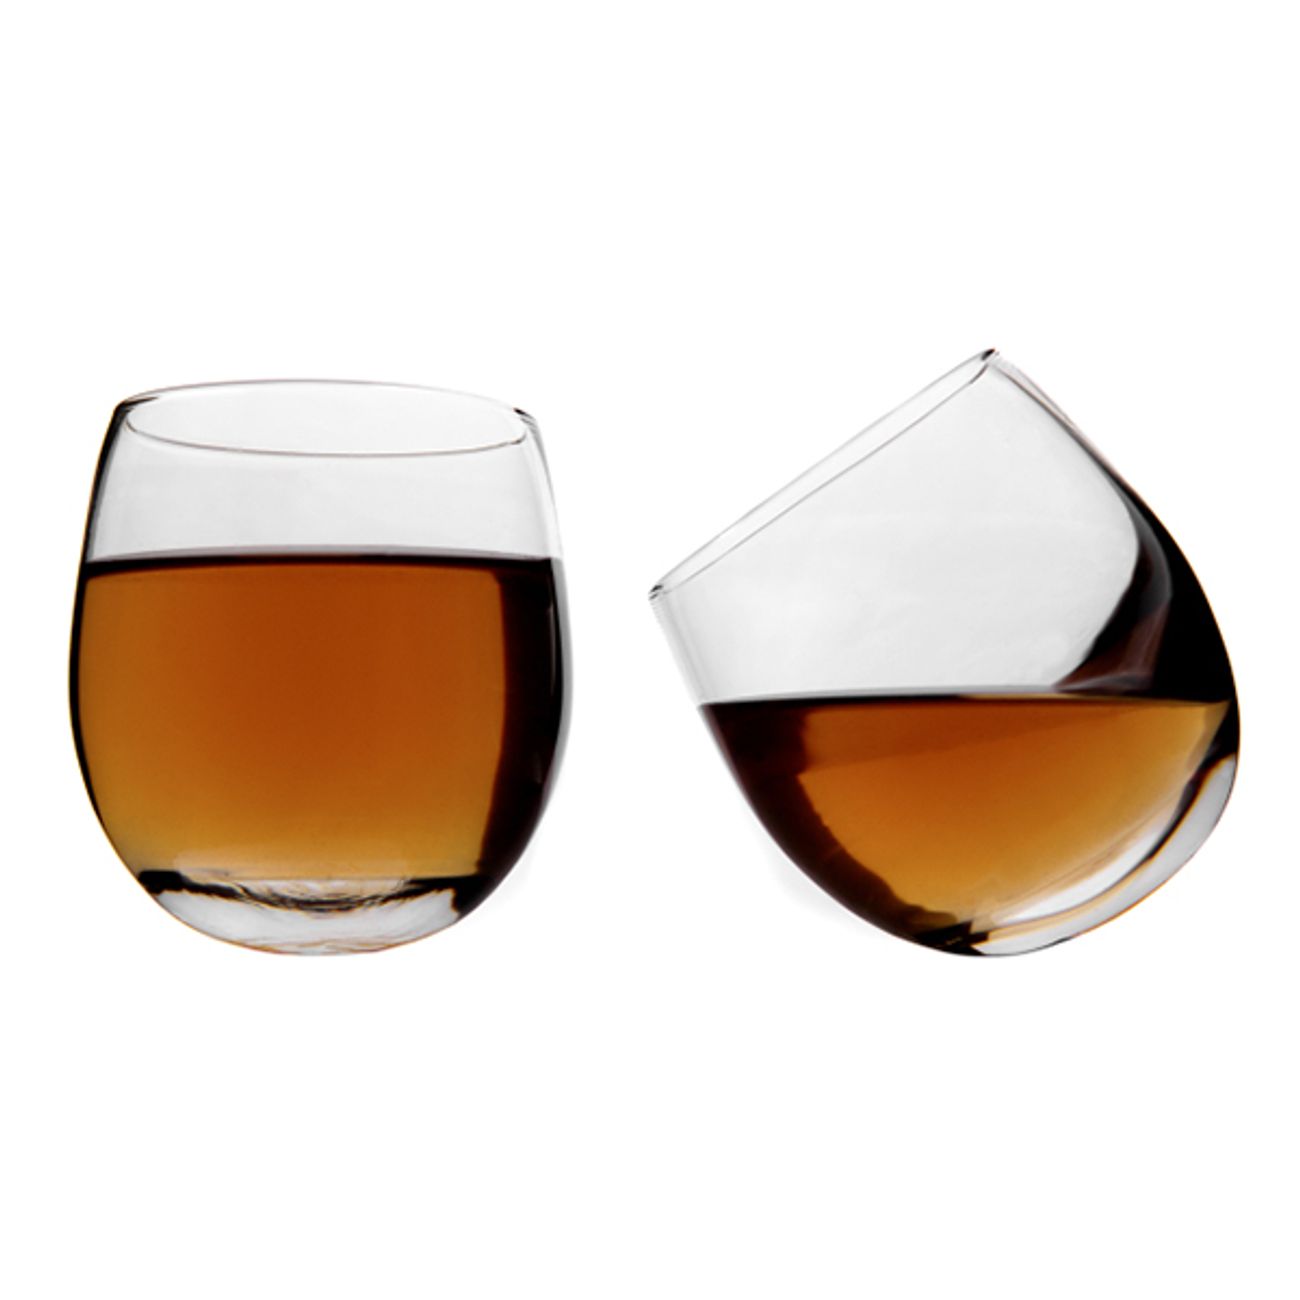 vinology-whiskyglas-1